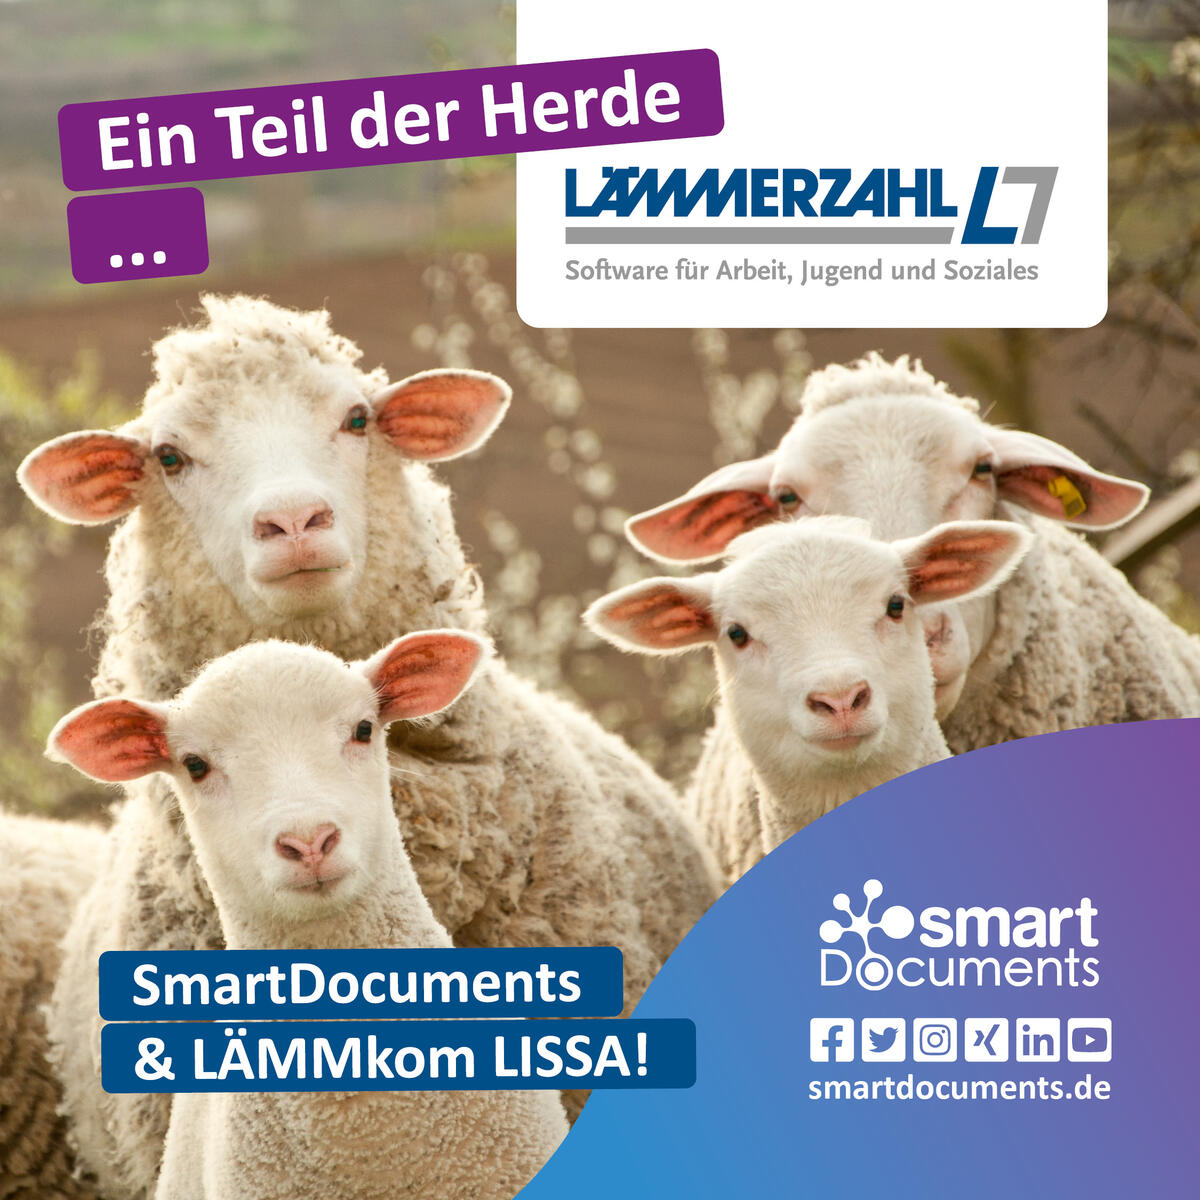 Foto Lämmer mit Schriftzug: SmartDocuments: Ein Teil der Herde ... Unsere Partnerschaft mit LÄMMERZAHL und den Firmenlogos der LÄMMERZAHL GmbH sowie SmartDocuments.